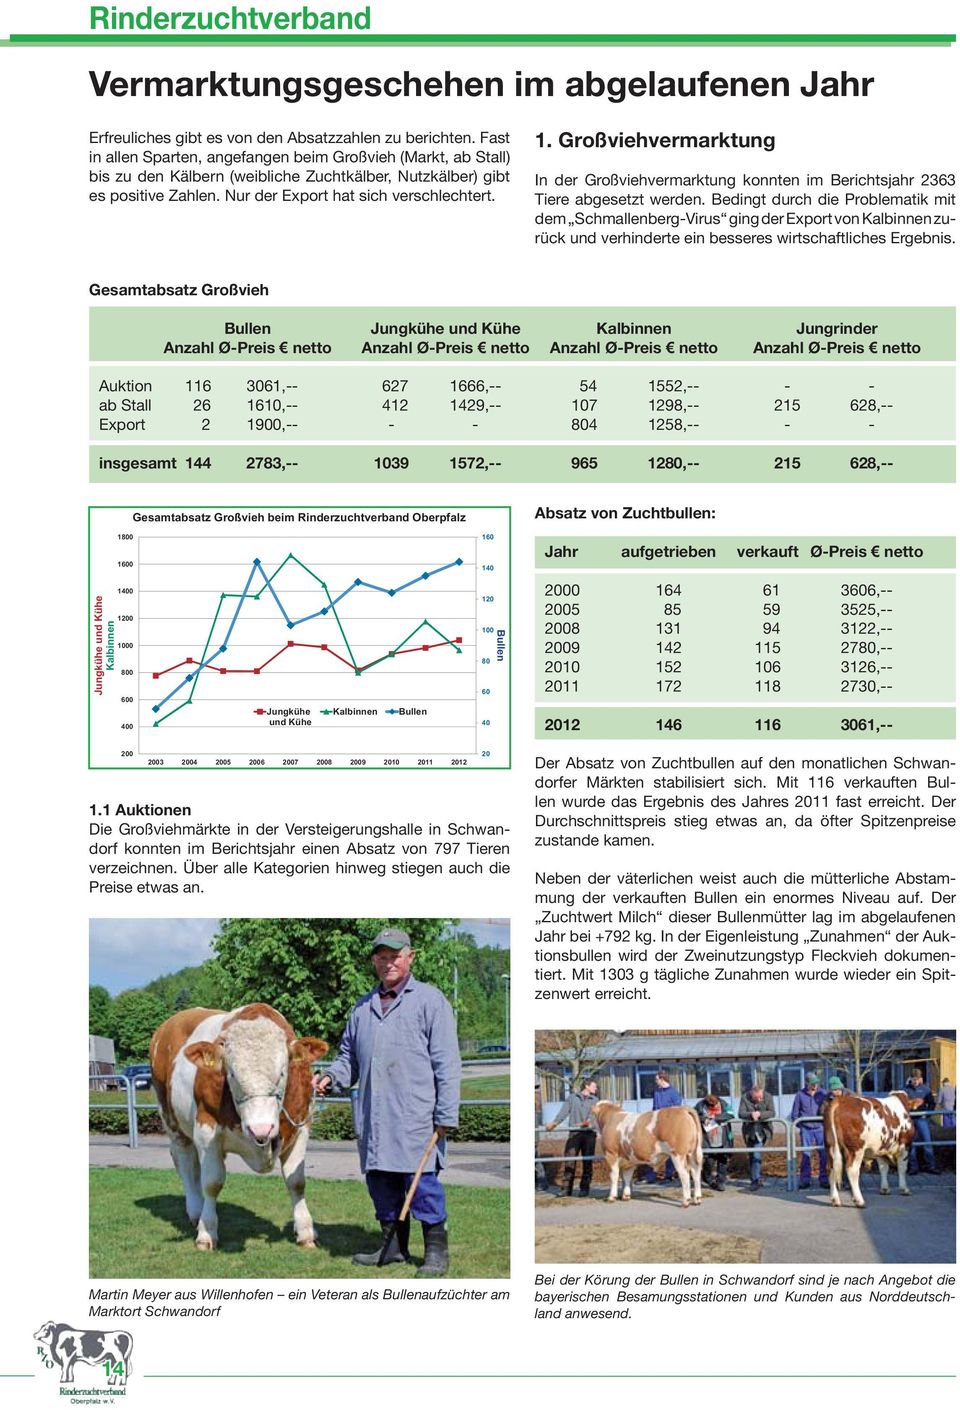 Großviehvermarktung In der Großviehvermarktung konnten im Berichtsjahr 2363 Tiere abgesetzt werden.